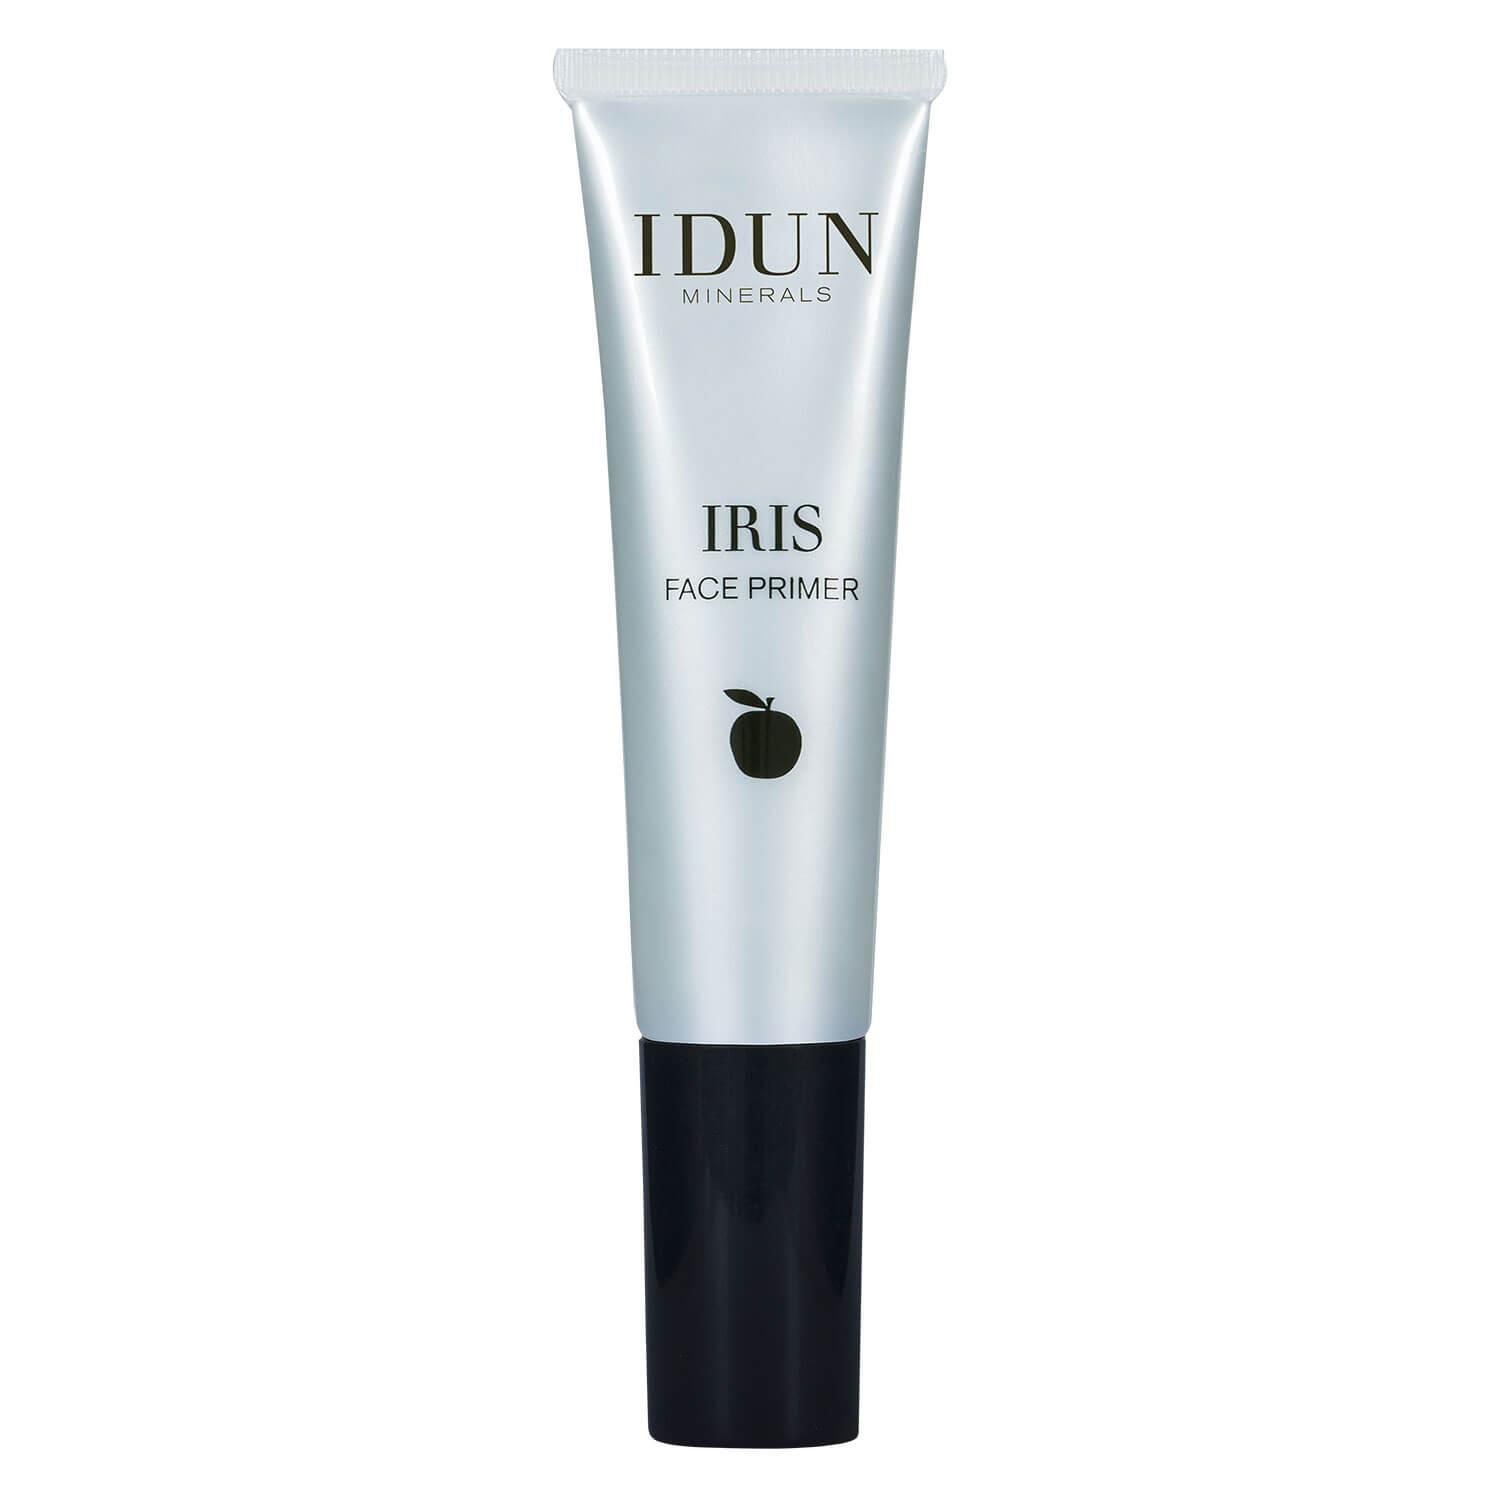 IDUN Teint - Face Primer Iris